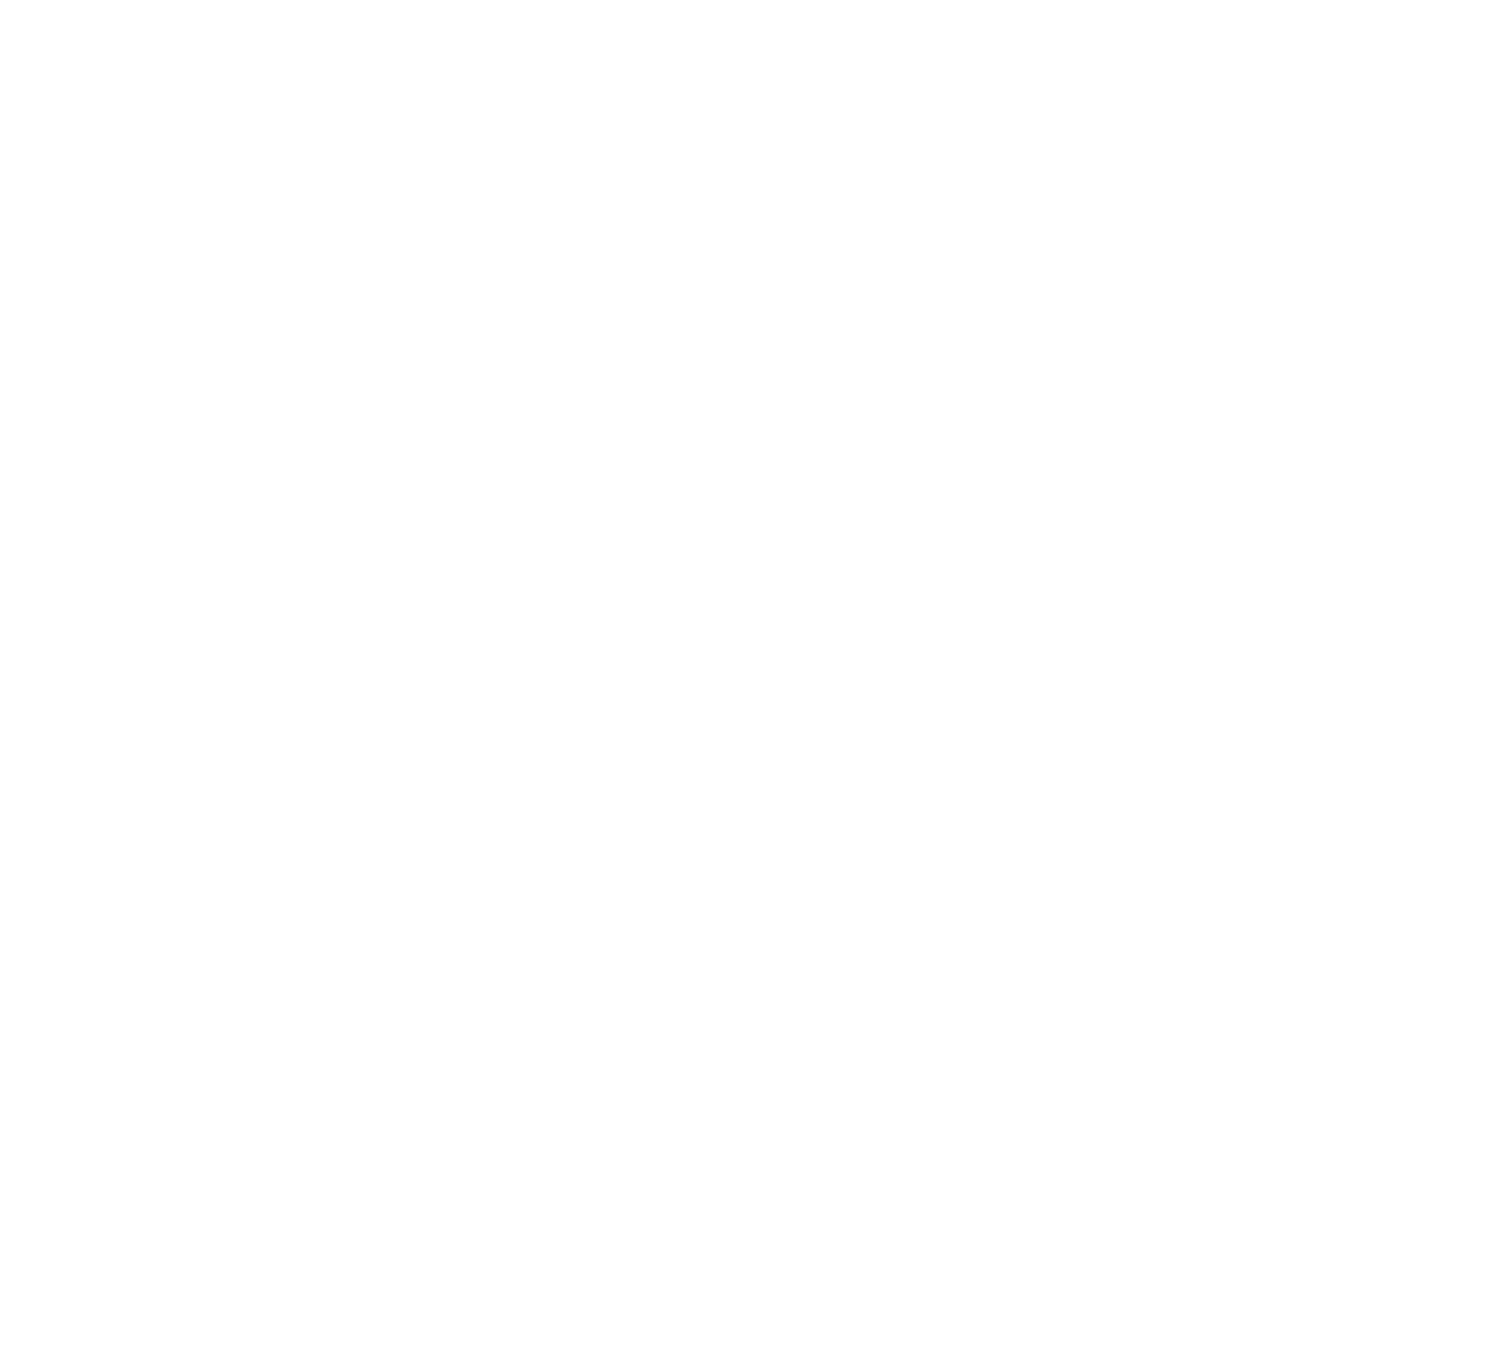 IDA